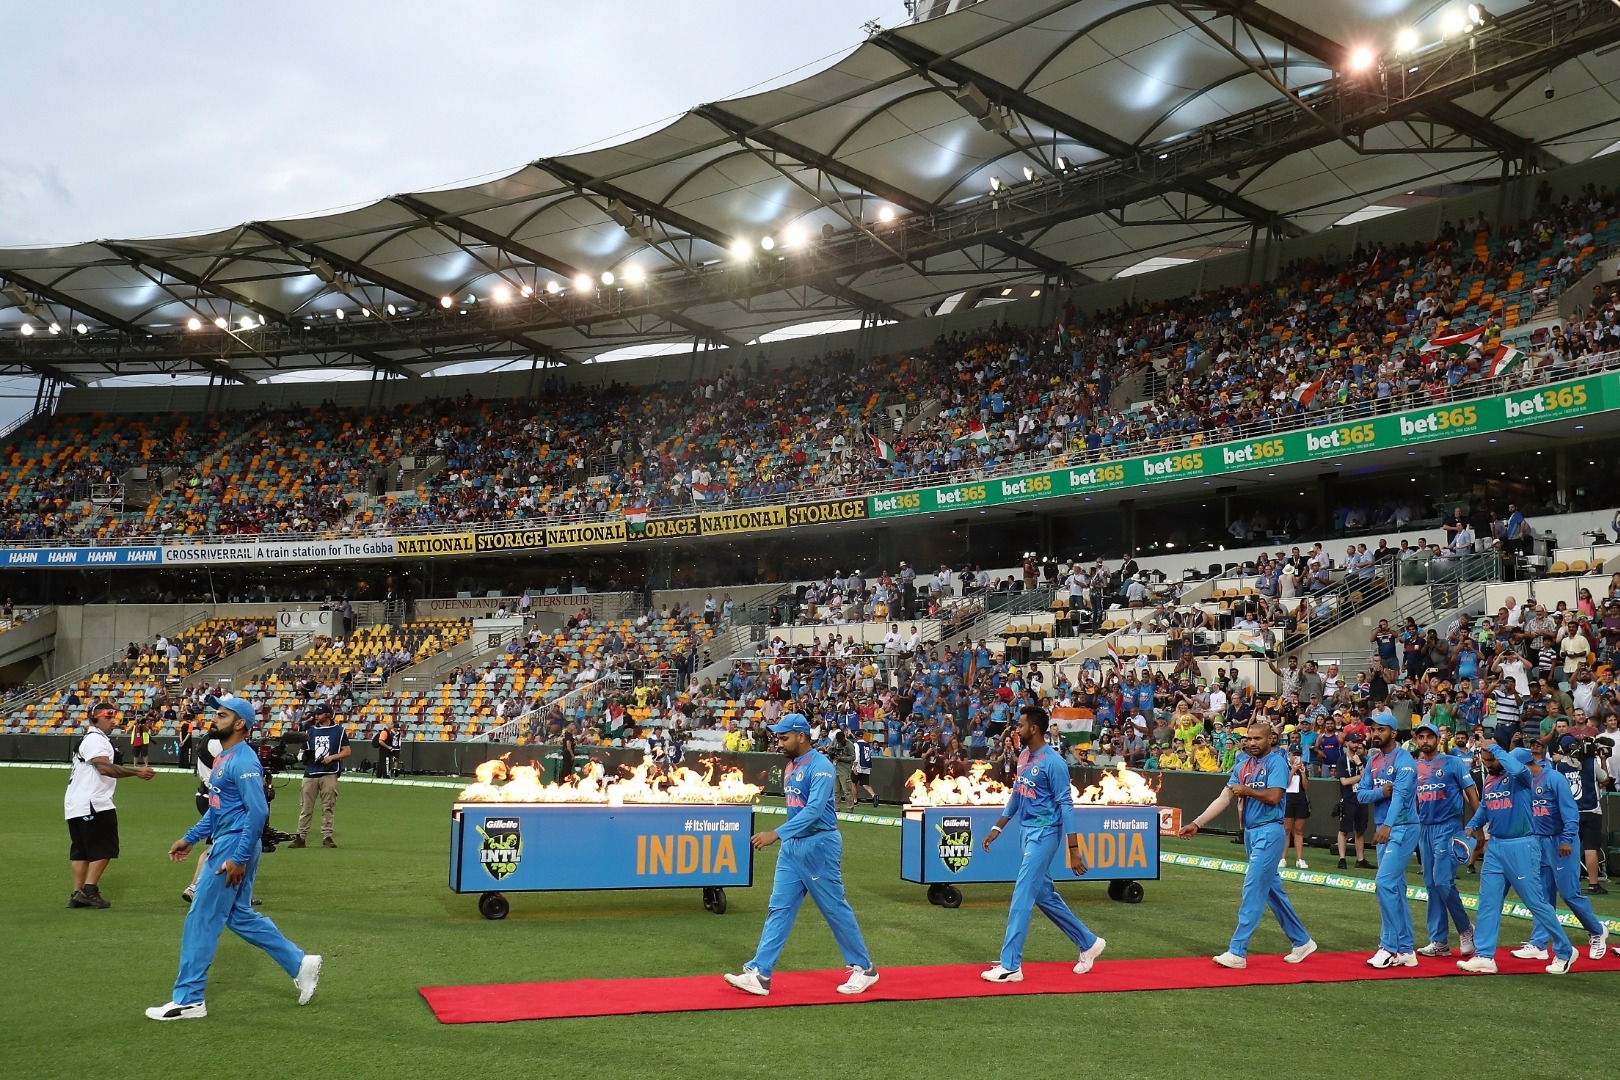 preview of 1st t20 between india and australia from vizag Preview 1st T20 India vs Australia: ऑस्ट्रेलिया के खिलाफ घर में जीतने उतरेगी टीम इंडिया